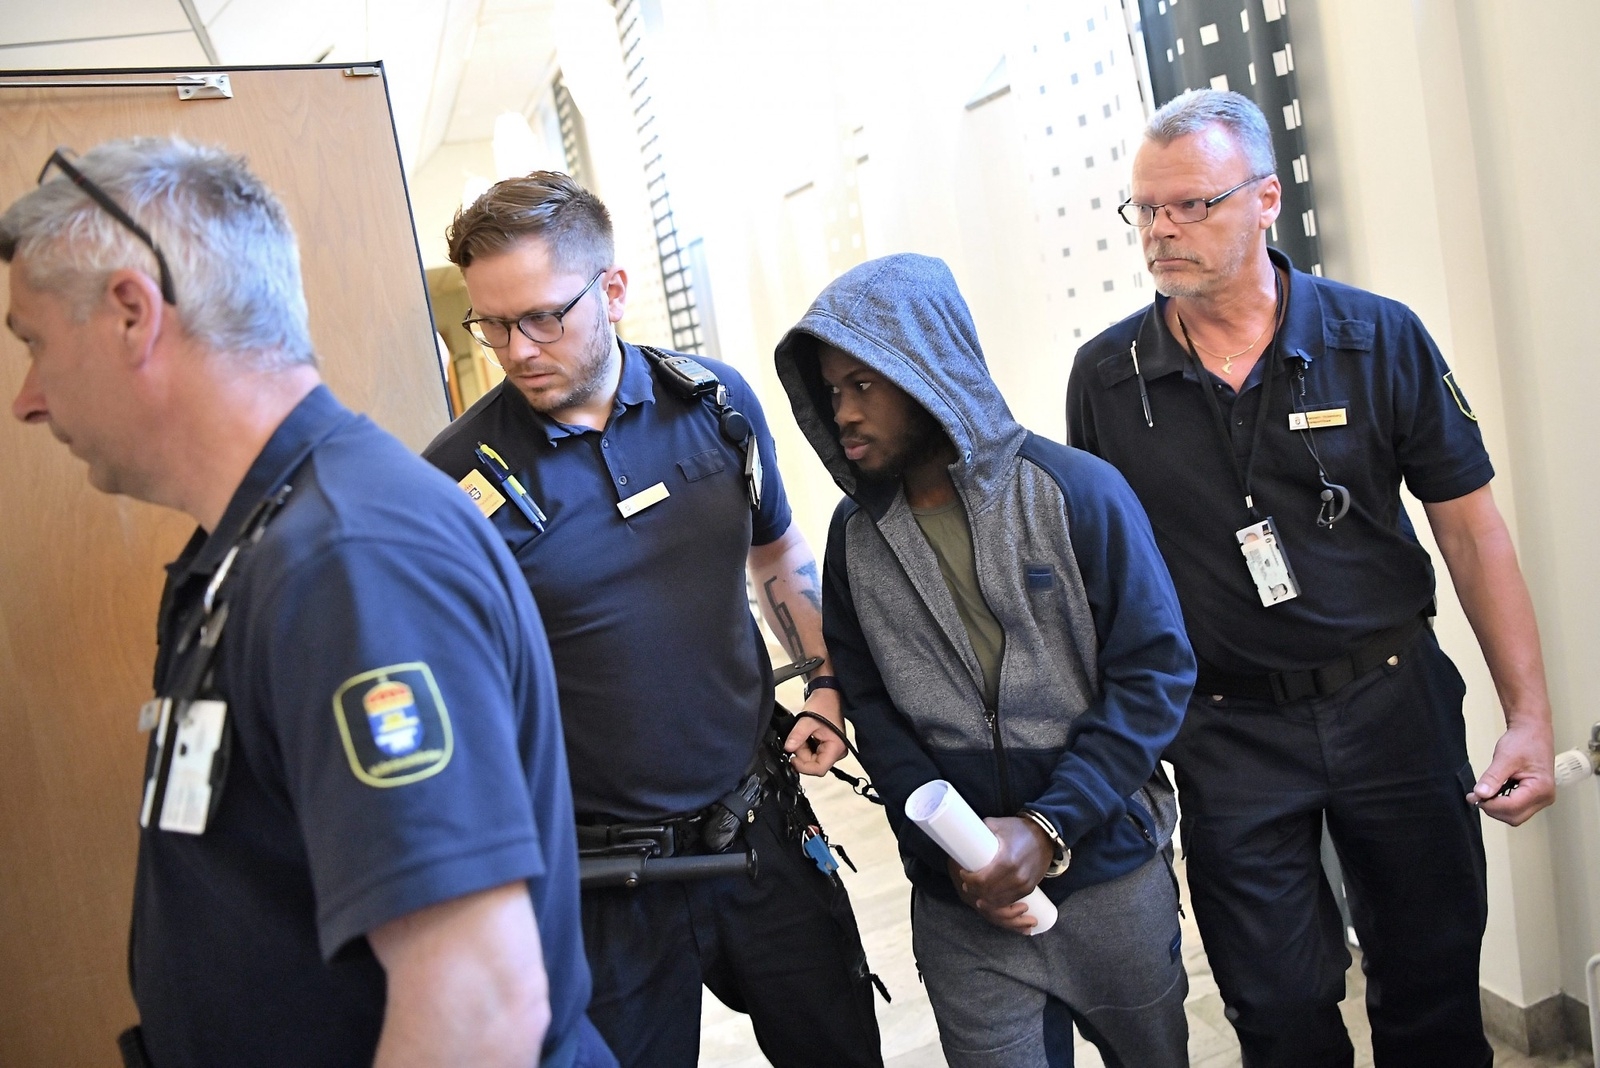 Den misstänkte fotbollspelaren anländer till rättegången där han åtalats misstänkt för våldtäkt mot barn i Malmö tingsrätt. Foto: Johan Nilsson / TT